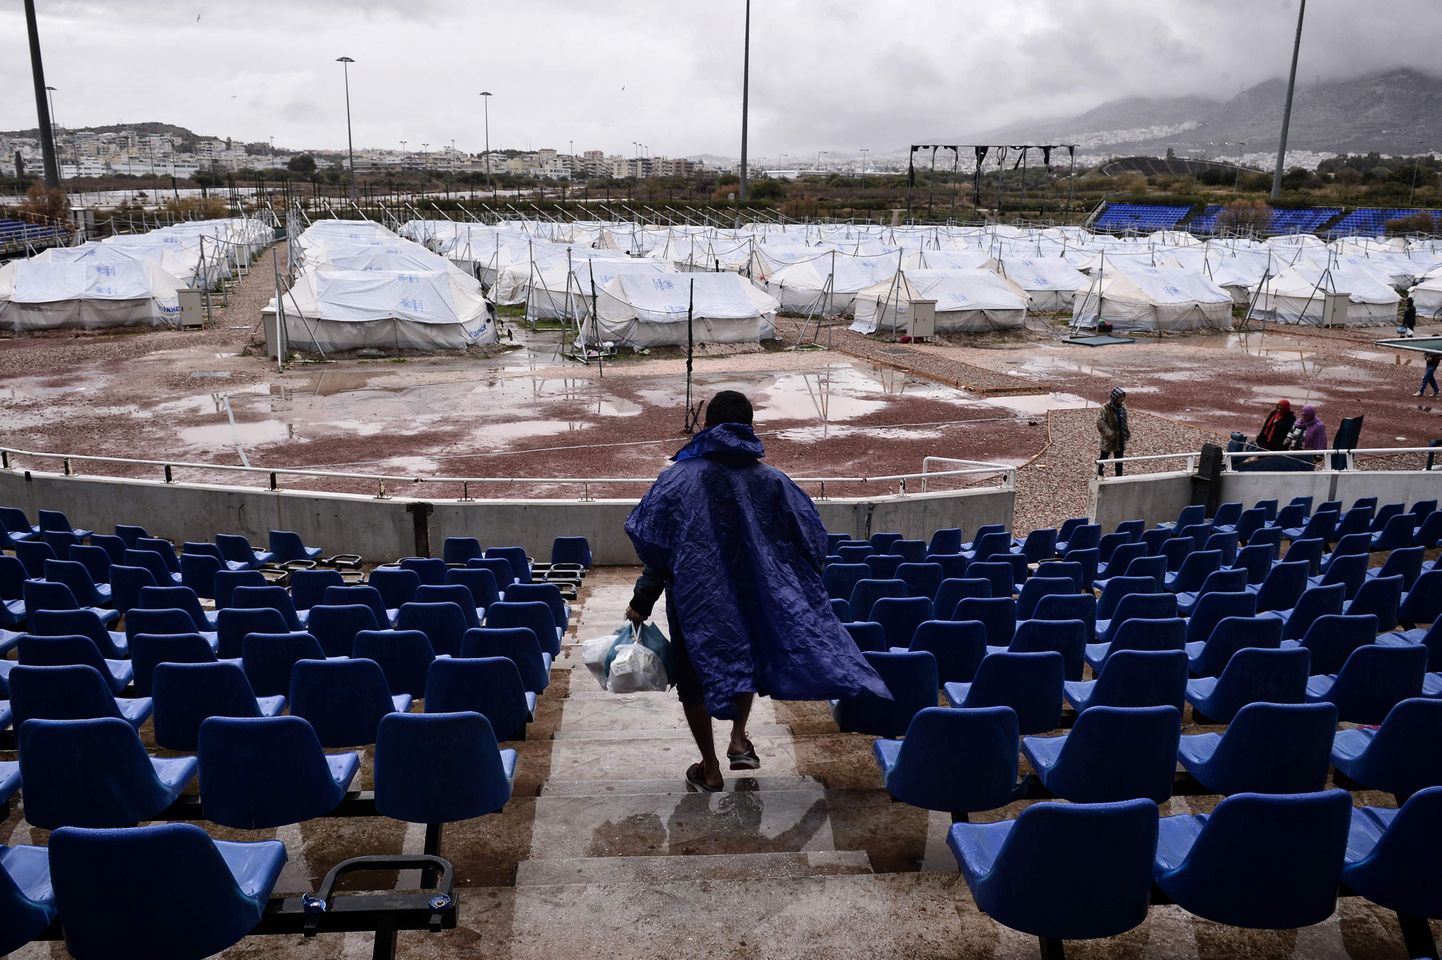 Hellinikoni pesapalliväljak, Ateena, Kreeka. Mitte väga pikka aega tagasi oli väljakumuru kaunilt roheline, toolid erksinised, kuid pärast 2004. aasta olümpiamänge on see lagunenud ja muutunud järjekordseks Kreeka varemeks. 2017. aastal löödi väljakule püsti põgenikelaager.